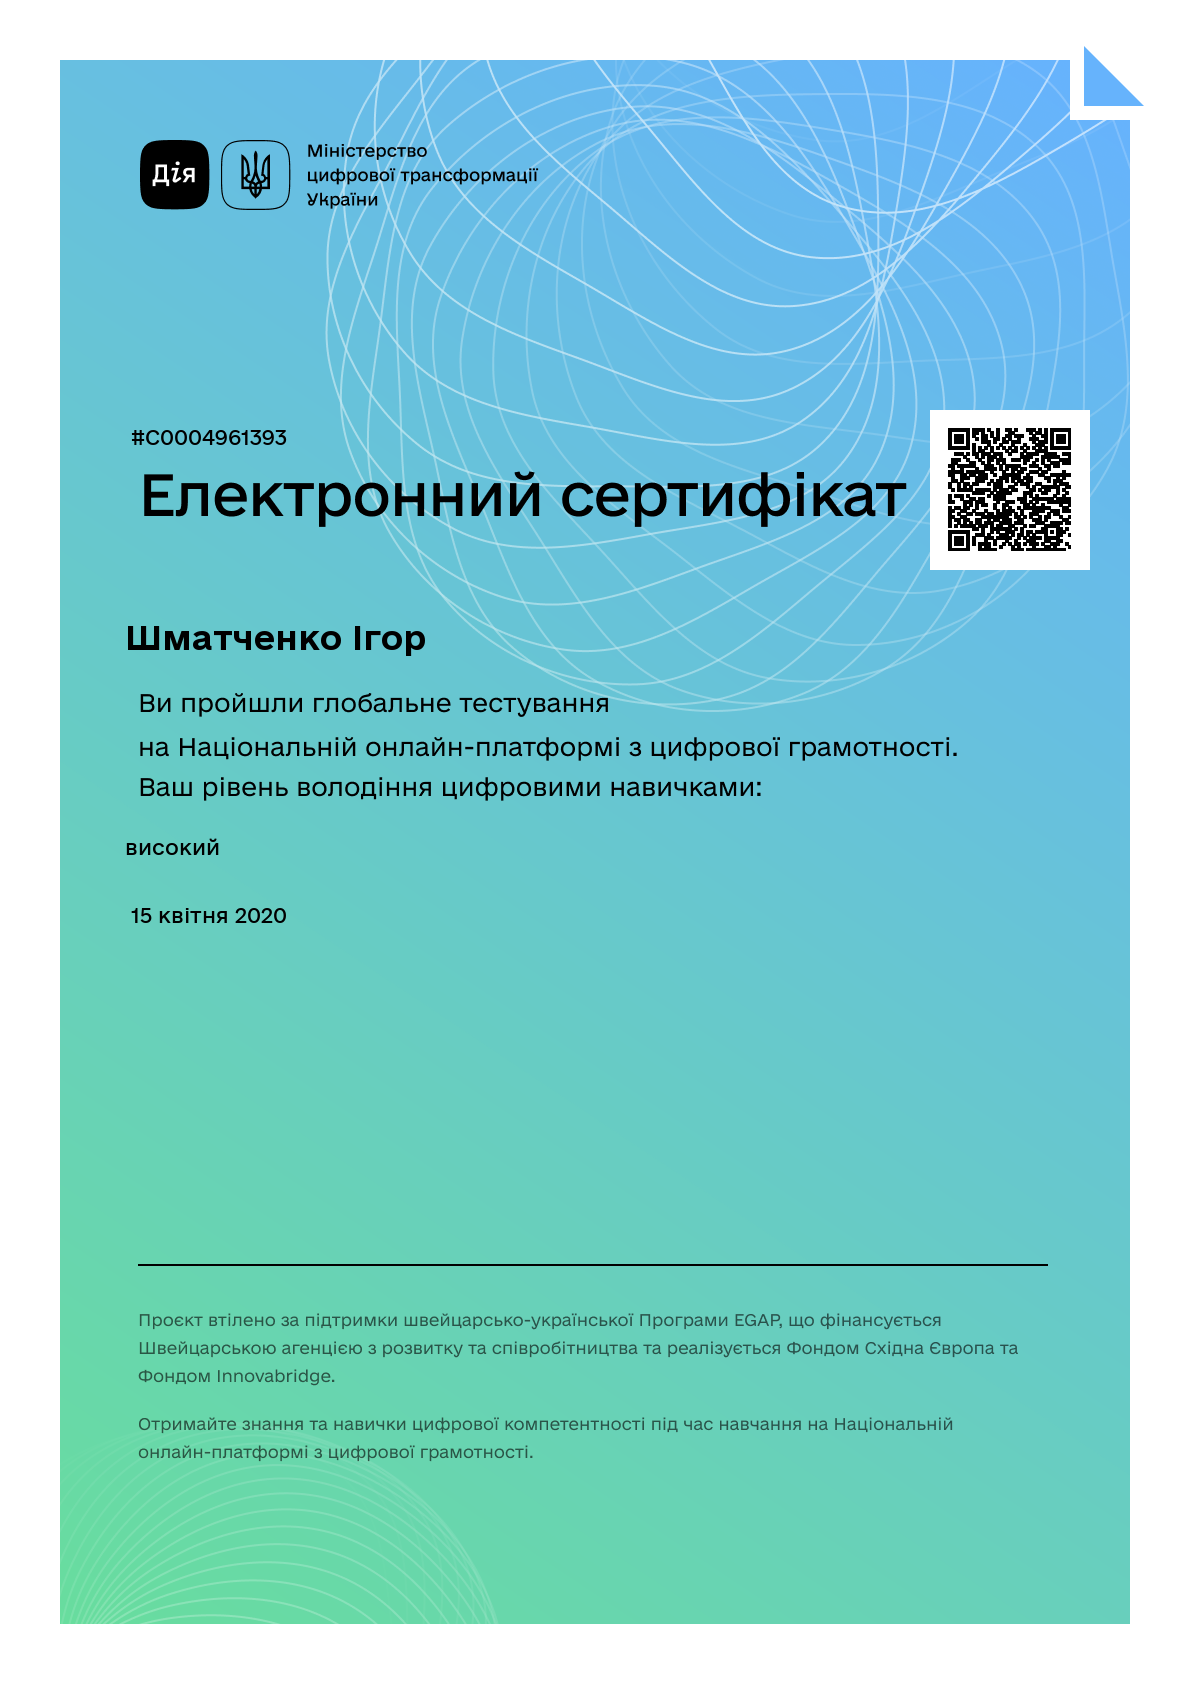 /uploads/certificate/20200415/wejuztwKV6dggc4cL2-IpR7ZEWwSmRfK-1586952317.png?v=1716106888?v=1716106888